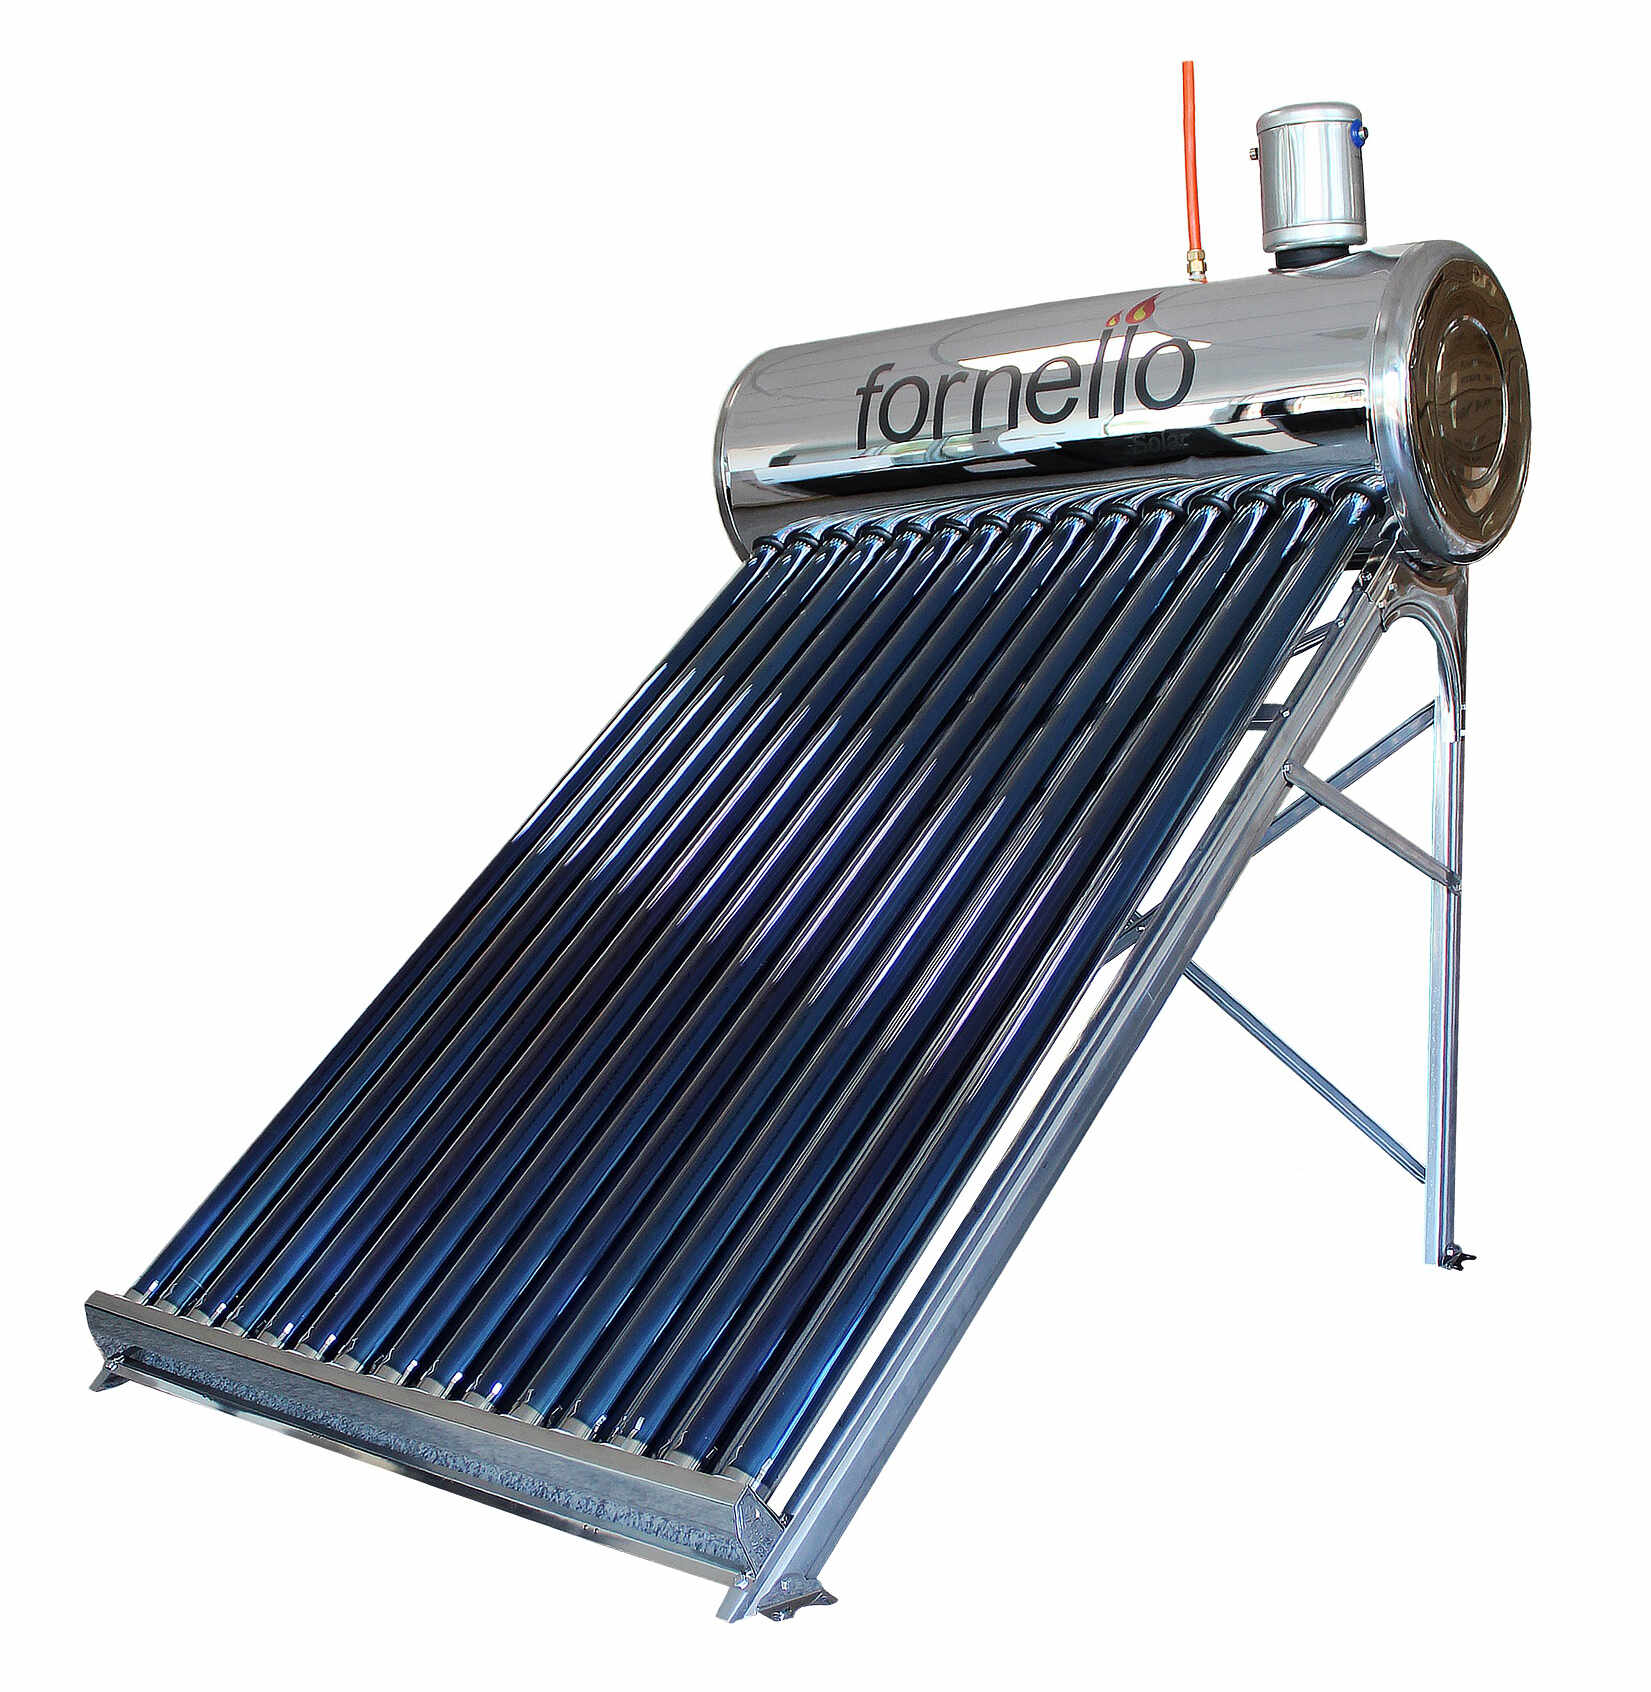 Panou solar nepresurizat Fornello pentru producere apa calda, cu rezervor inox 122 litri si 15 tuburi vidate